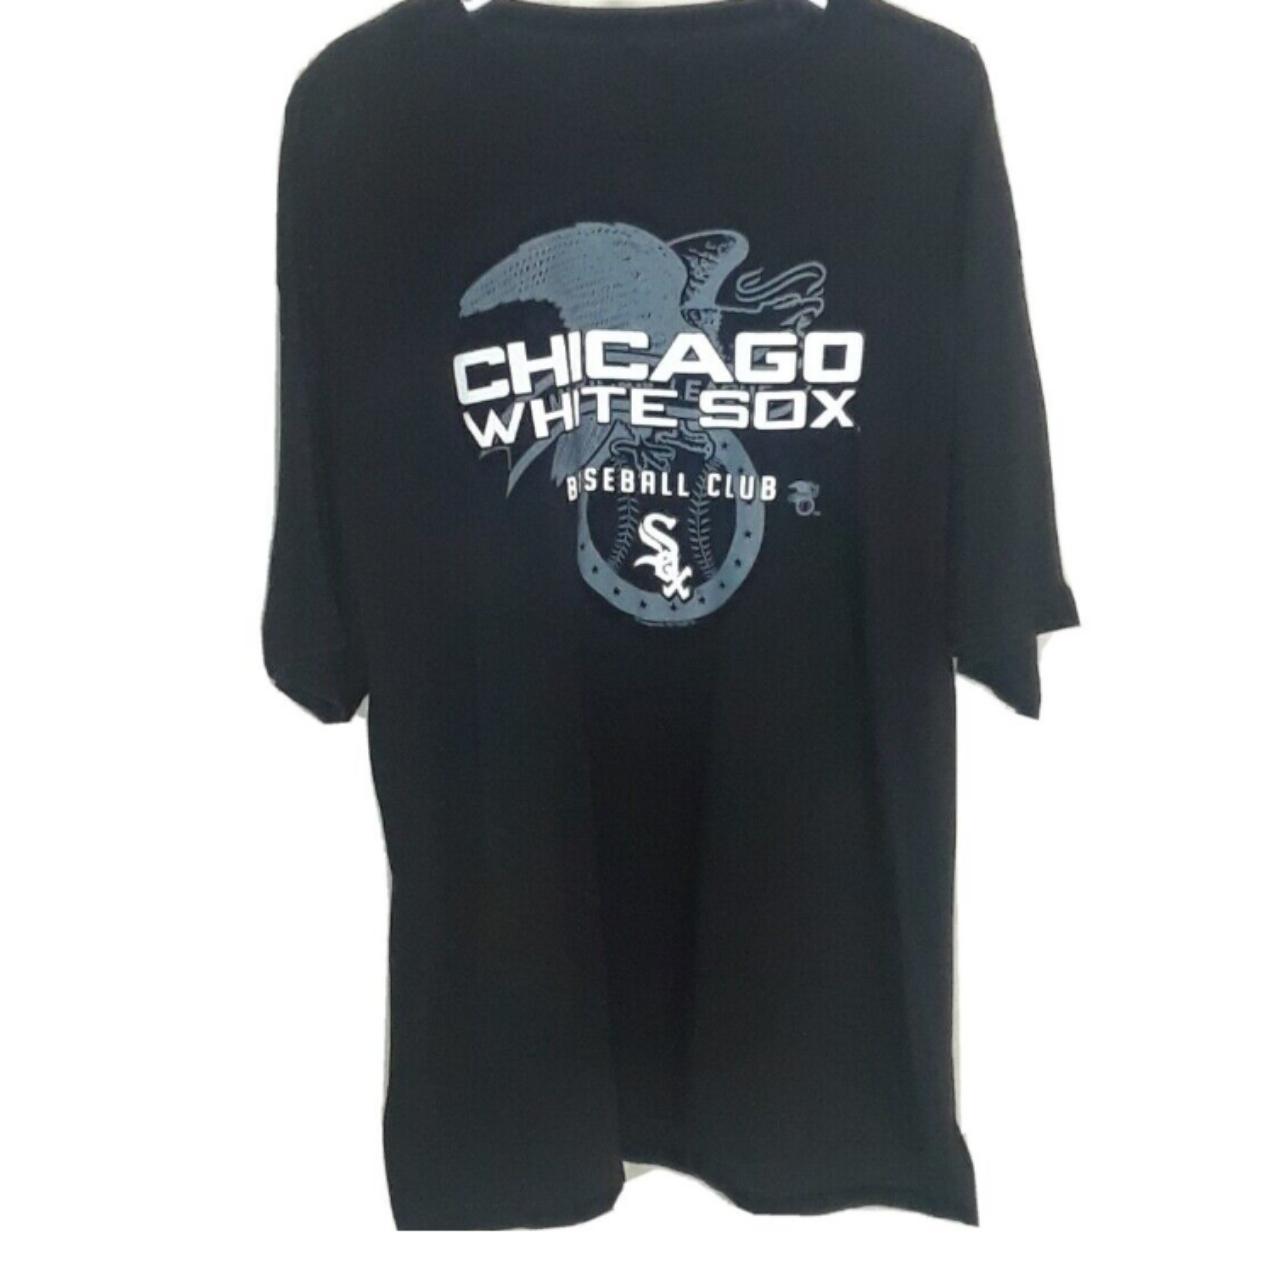 Chicago White Sox MLB Team Graphic White T-Shirt